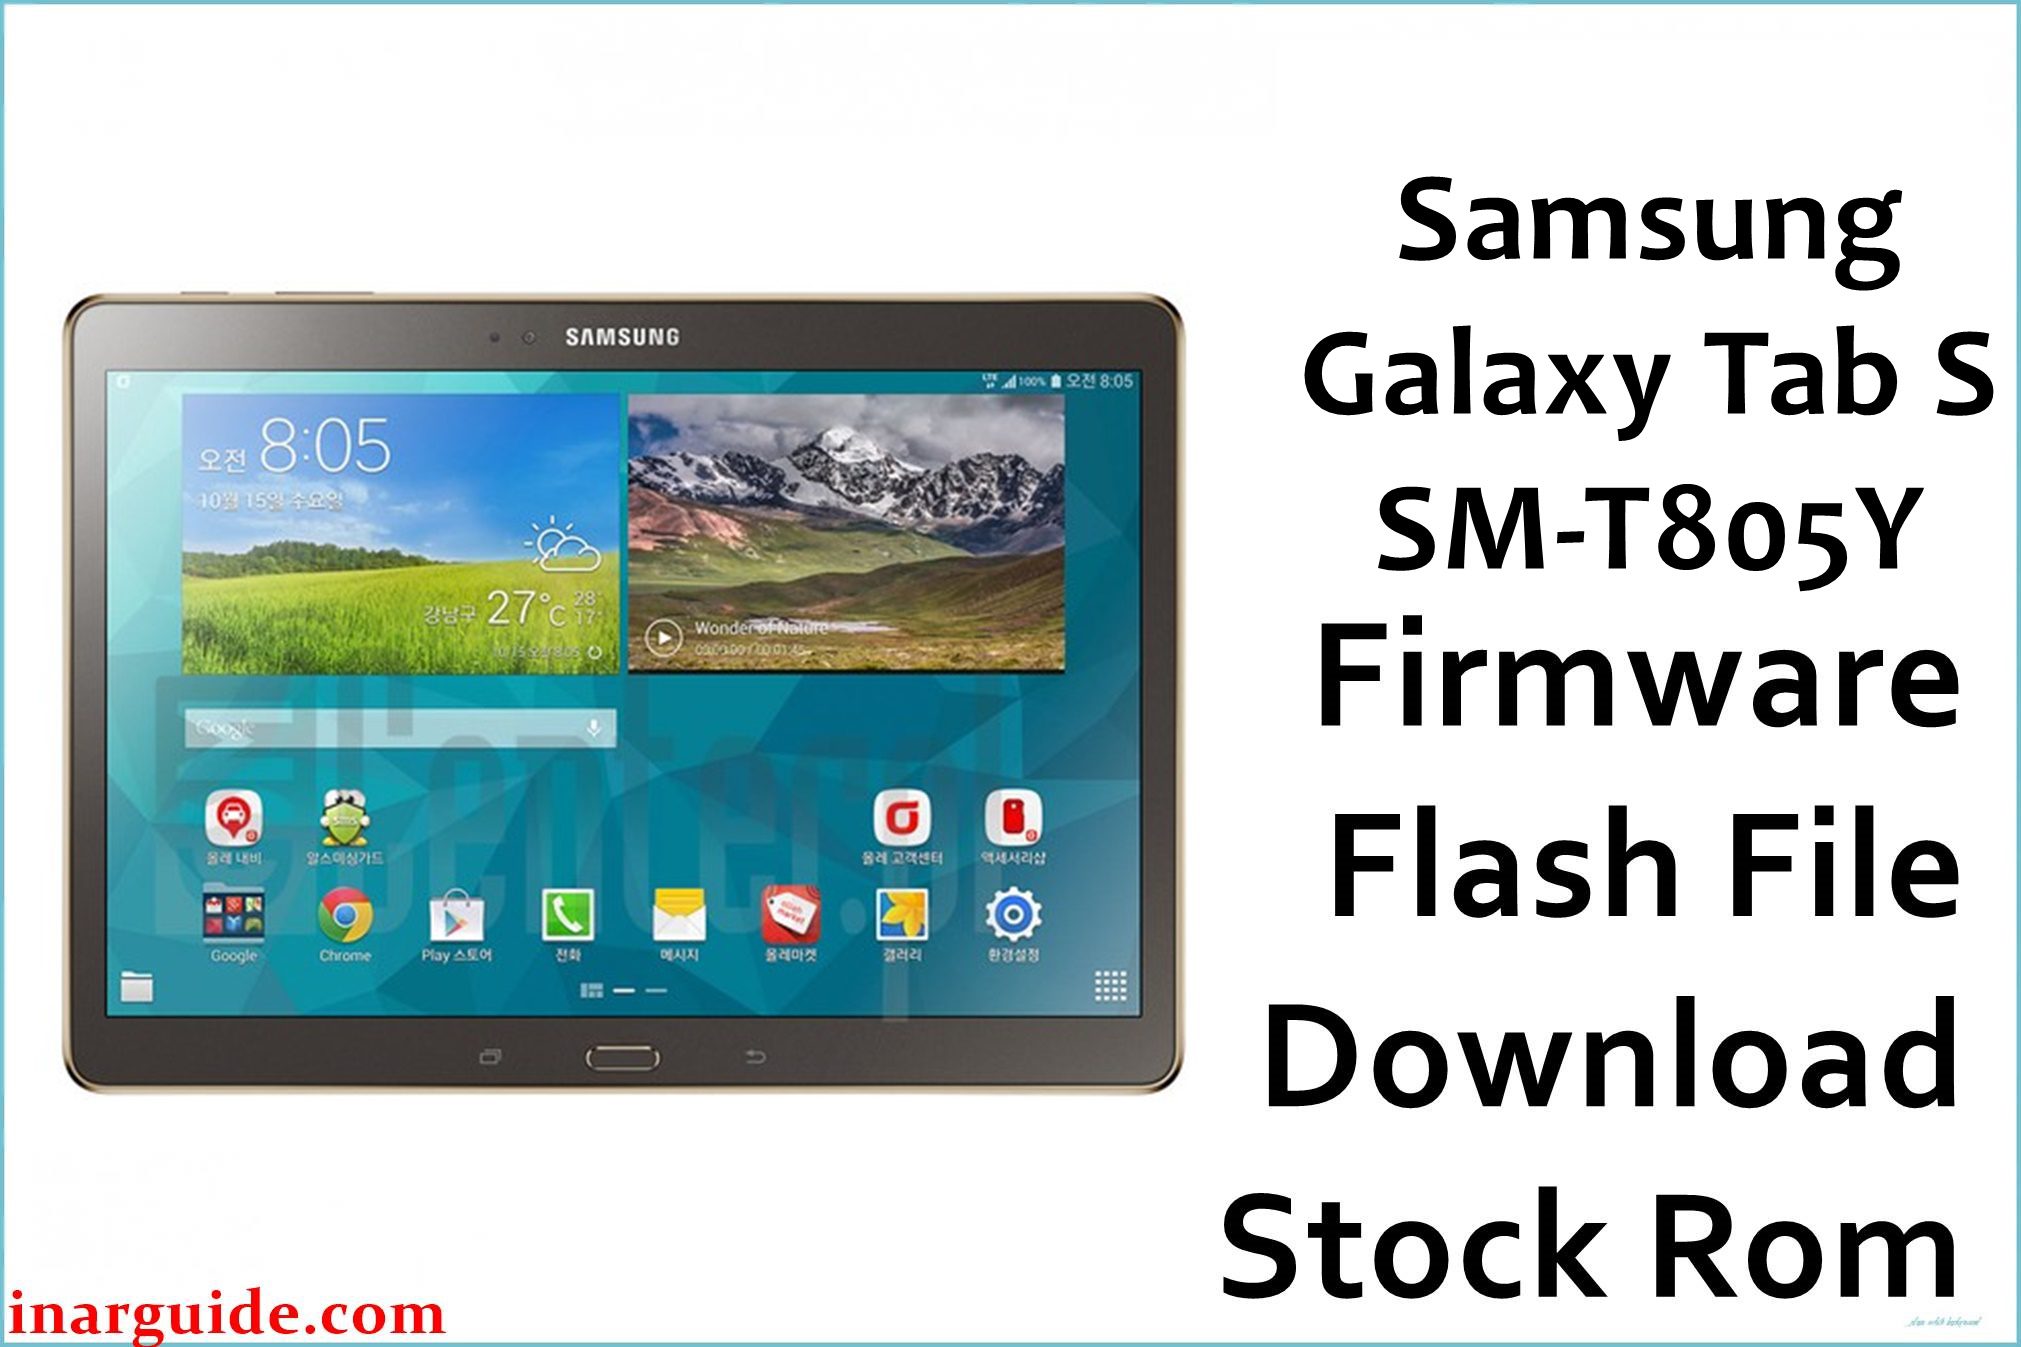 Samsung Galaxy Tab S SM T805Y